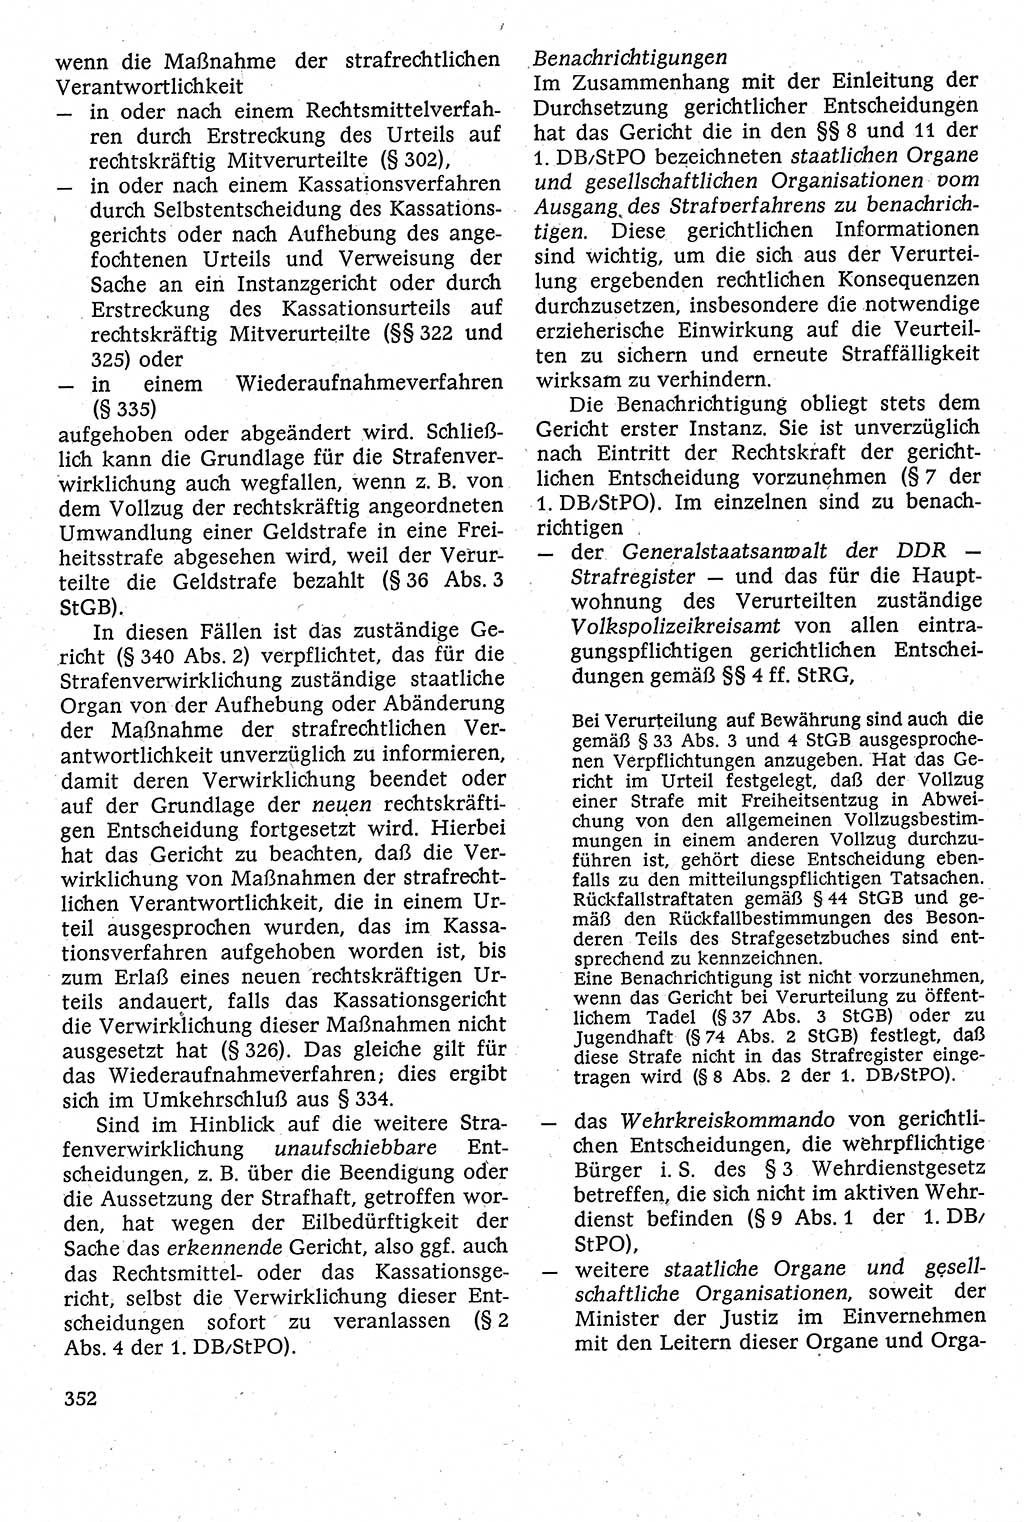 Strafverfahrensrecht [Deutsche Demokratische Republik (DDR)], Lehrbuch 1982, Seite 352 (Strafverf.-R. DDR Lb. 1982, S. 352)